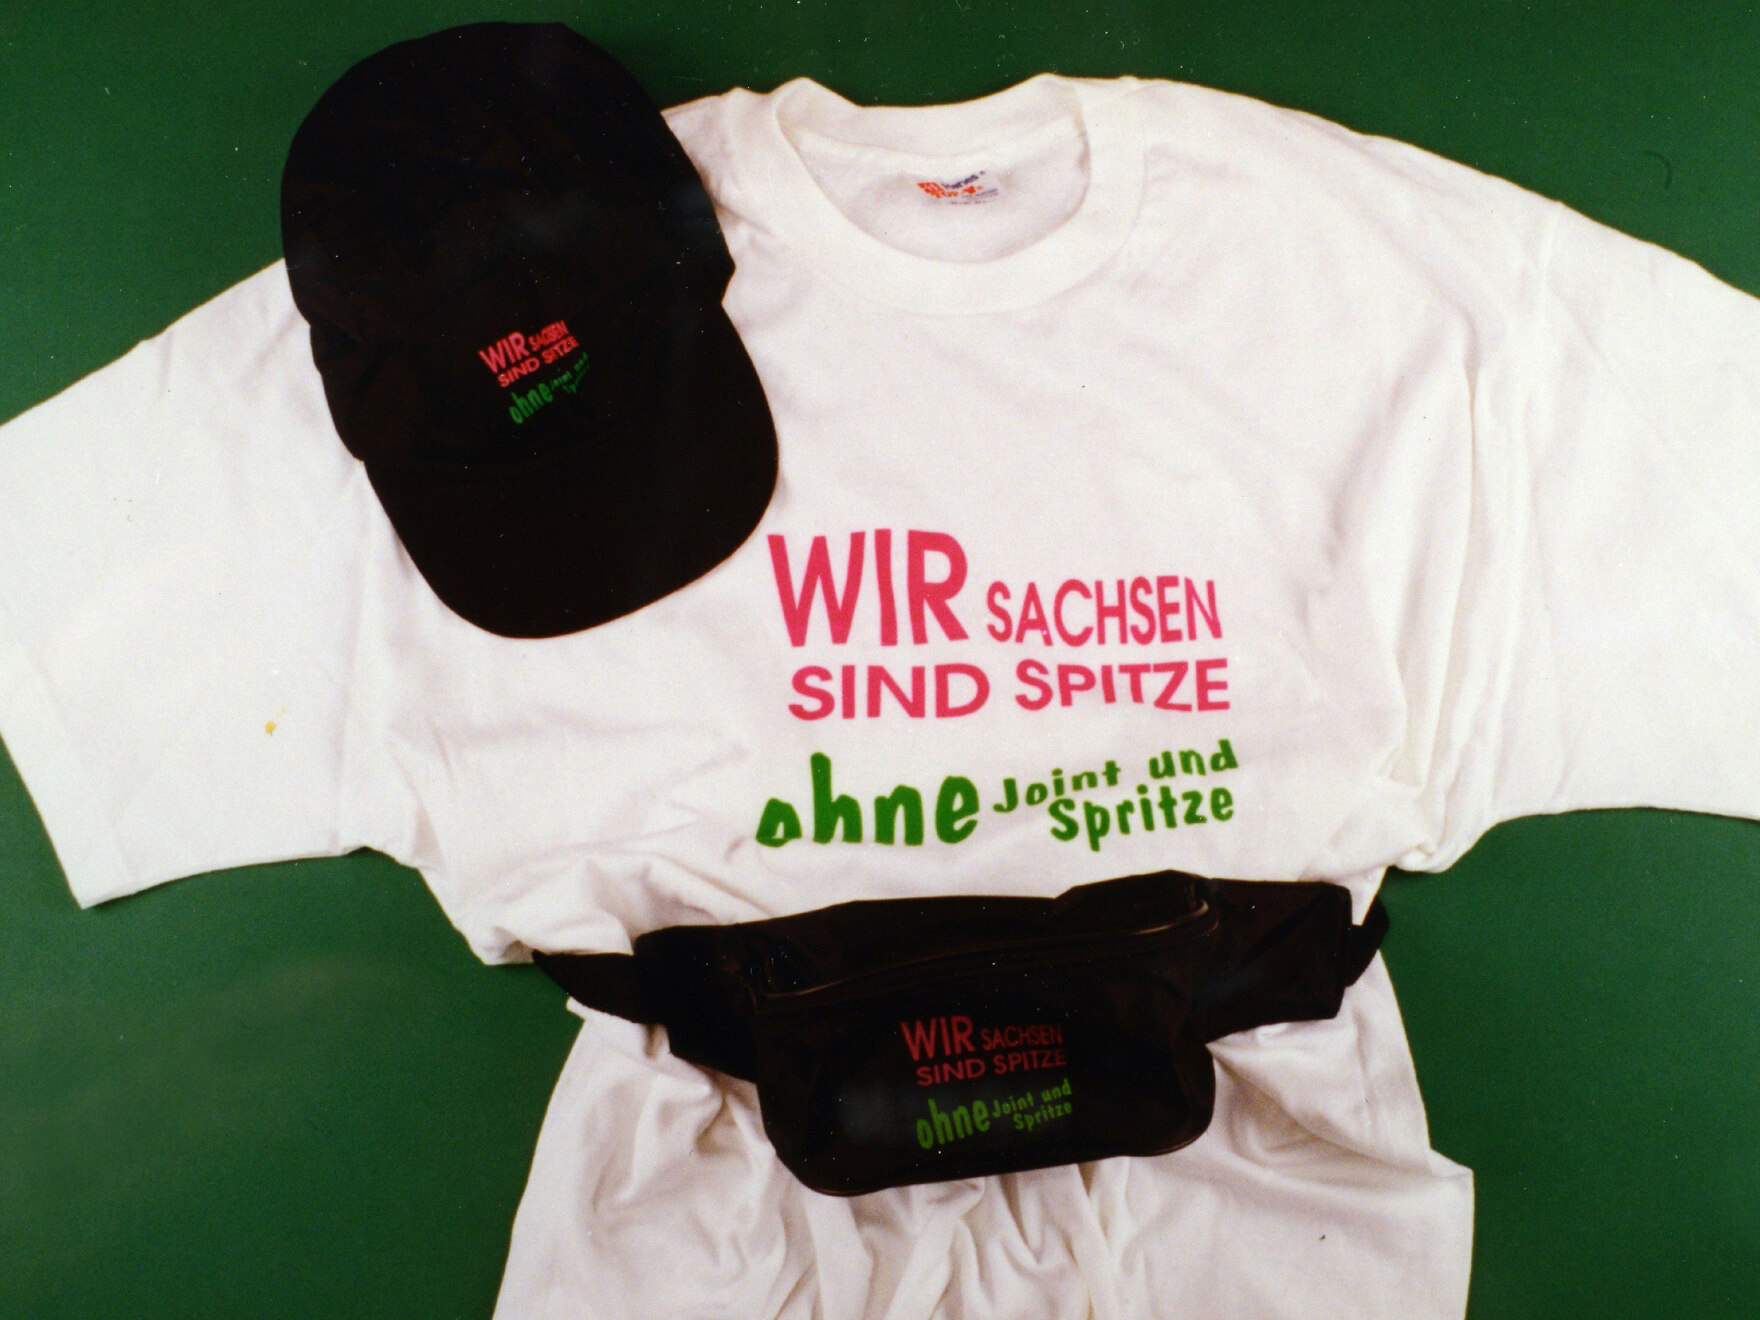 Im Rahmen der Präventionskampagne »Wir Sachsen sind Spitze ohne Joint und Spritze« wurden auch T-Shirts, Basecaps und Bauchtaschen mit dem Slogan bedruckt. Diese Kleidungsstücke sind vor einem grünen Hintergrund zu sehen.